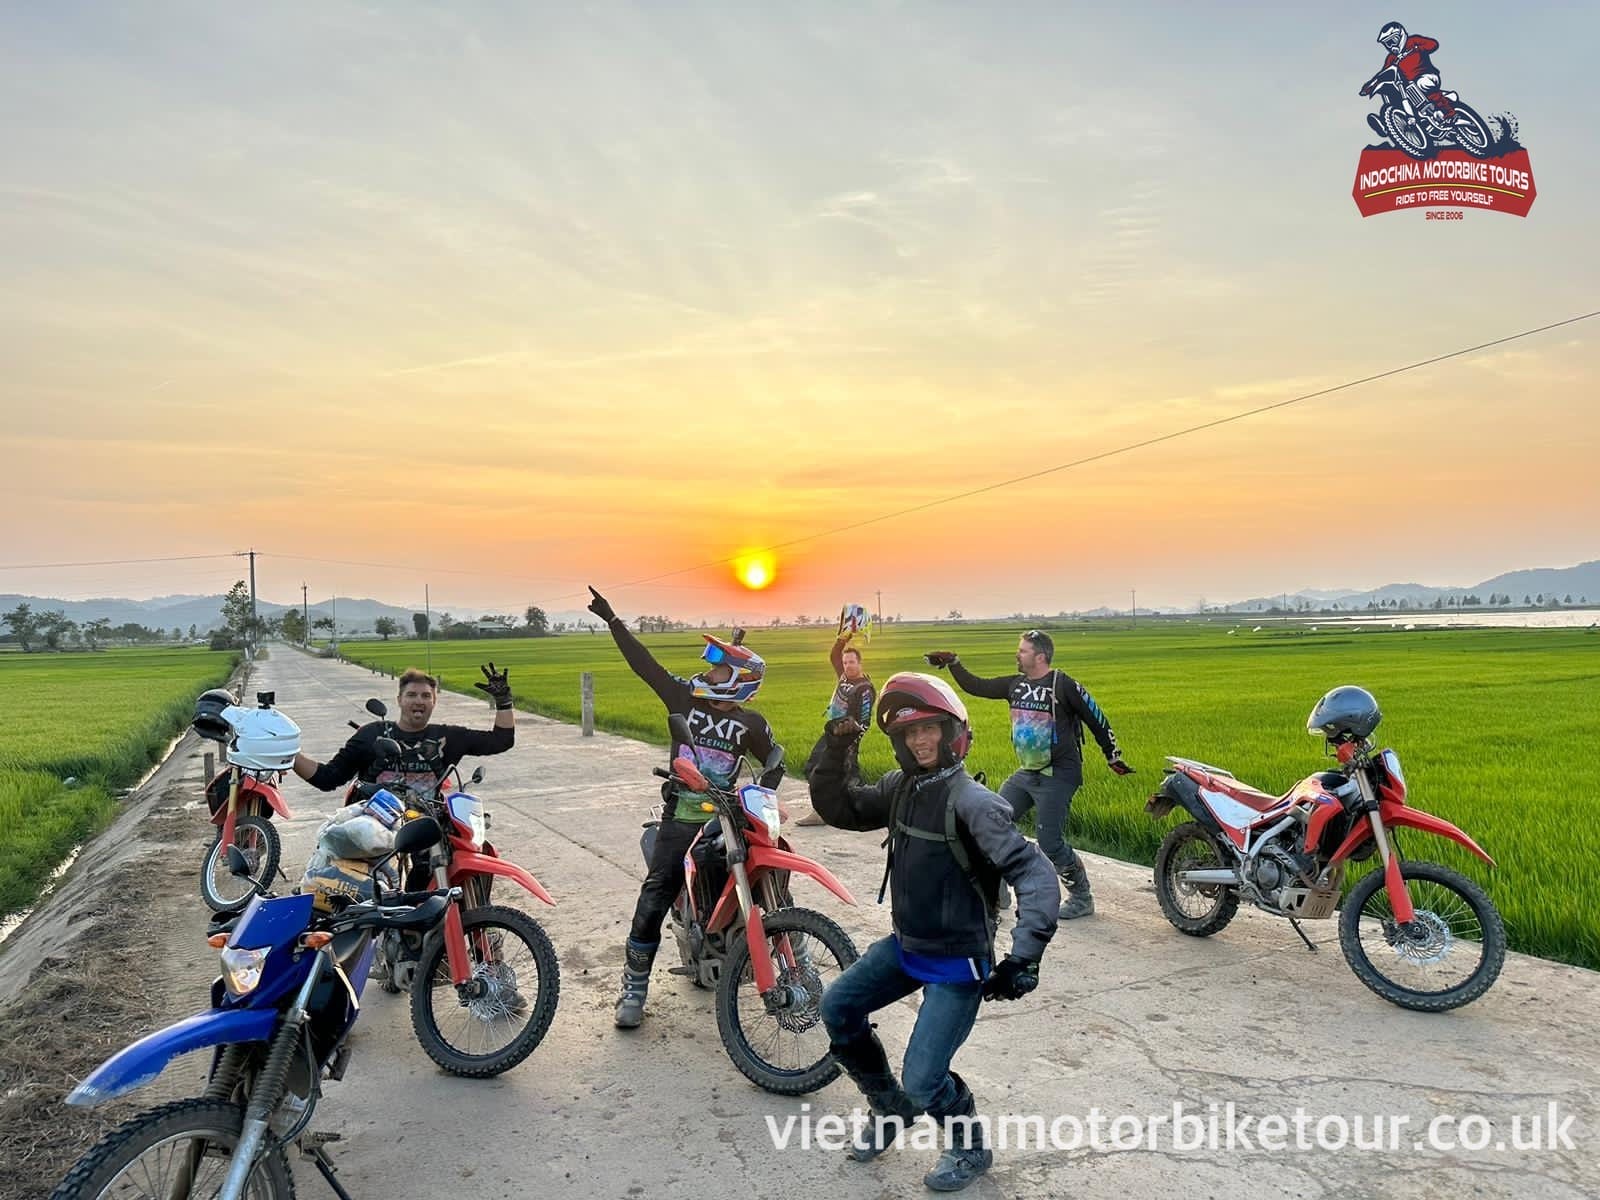 saigon motorbike tour to dalat 1 - HOI AN LOOP MOTORBIKE TOUR TO DA LAT - NHA TRANG - QUY NHON